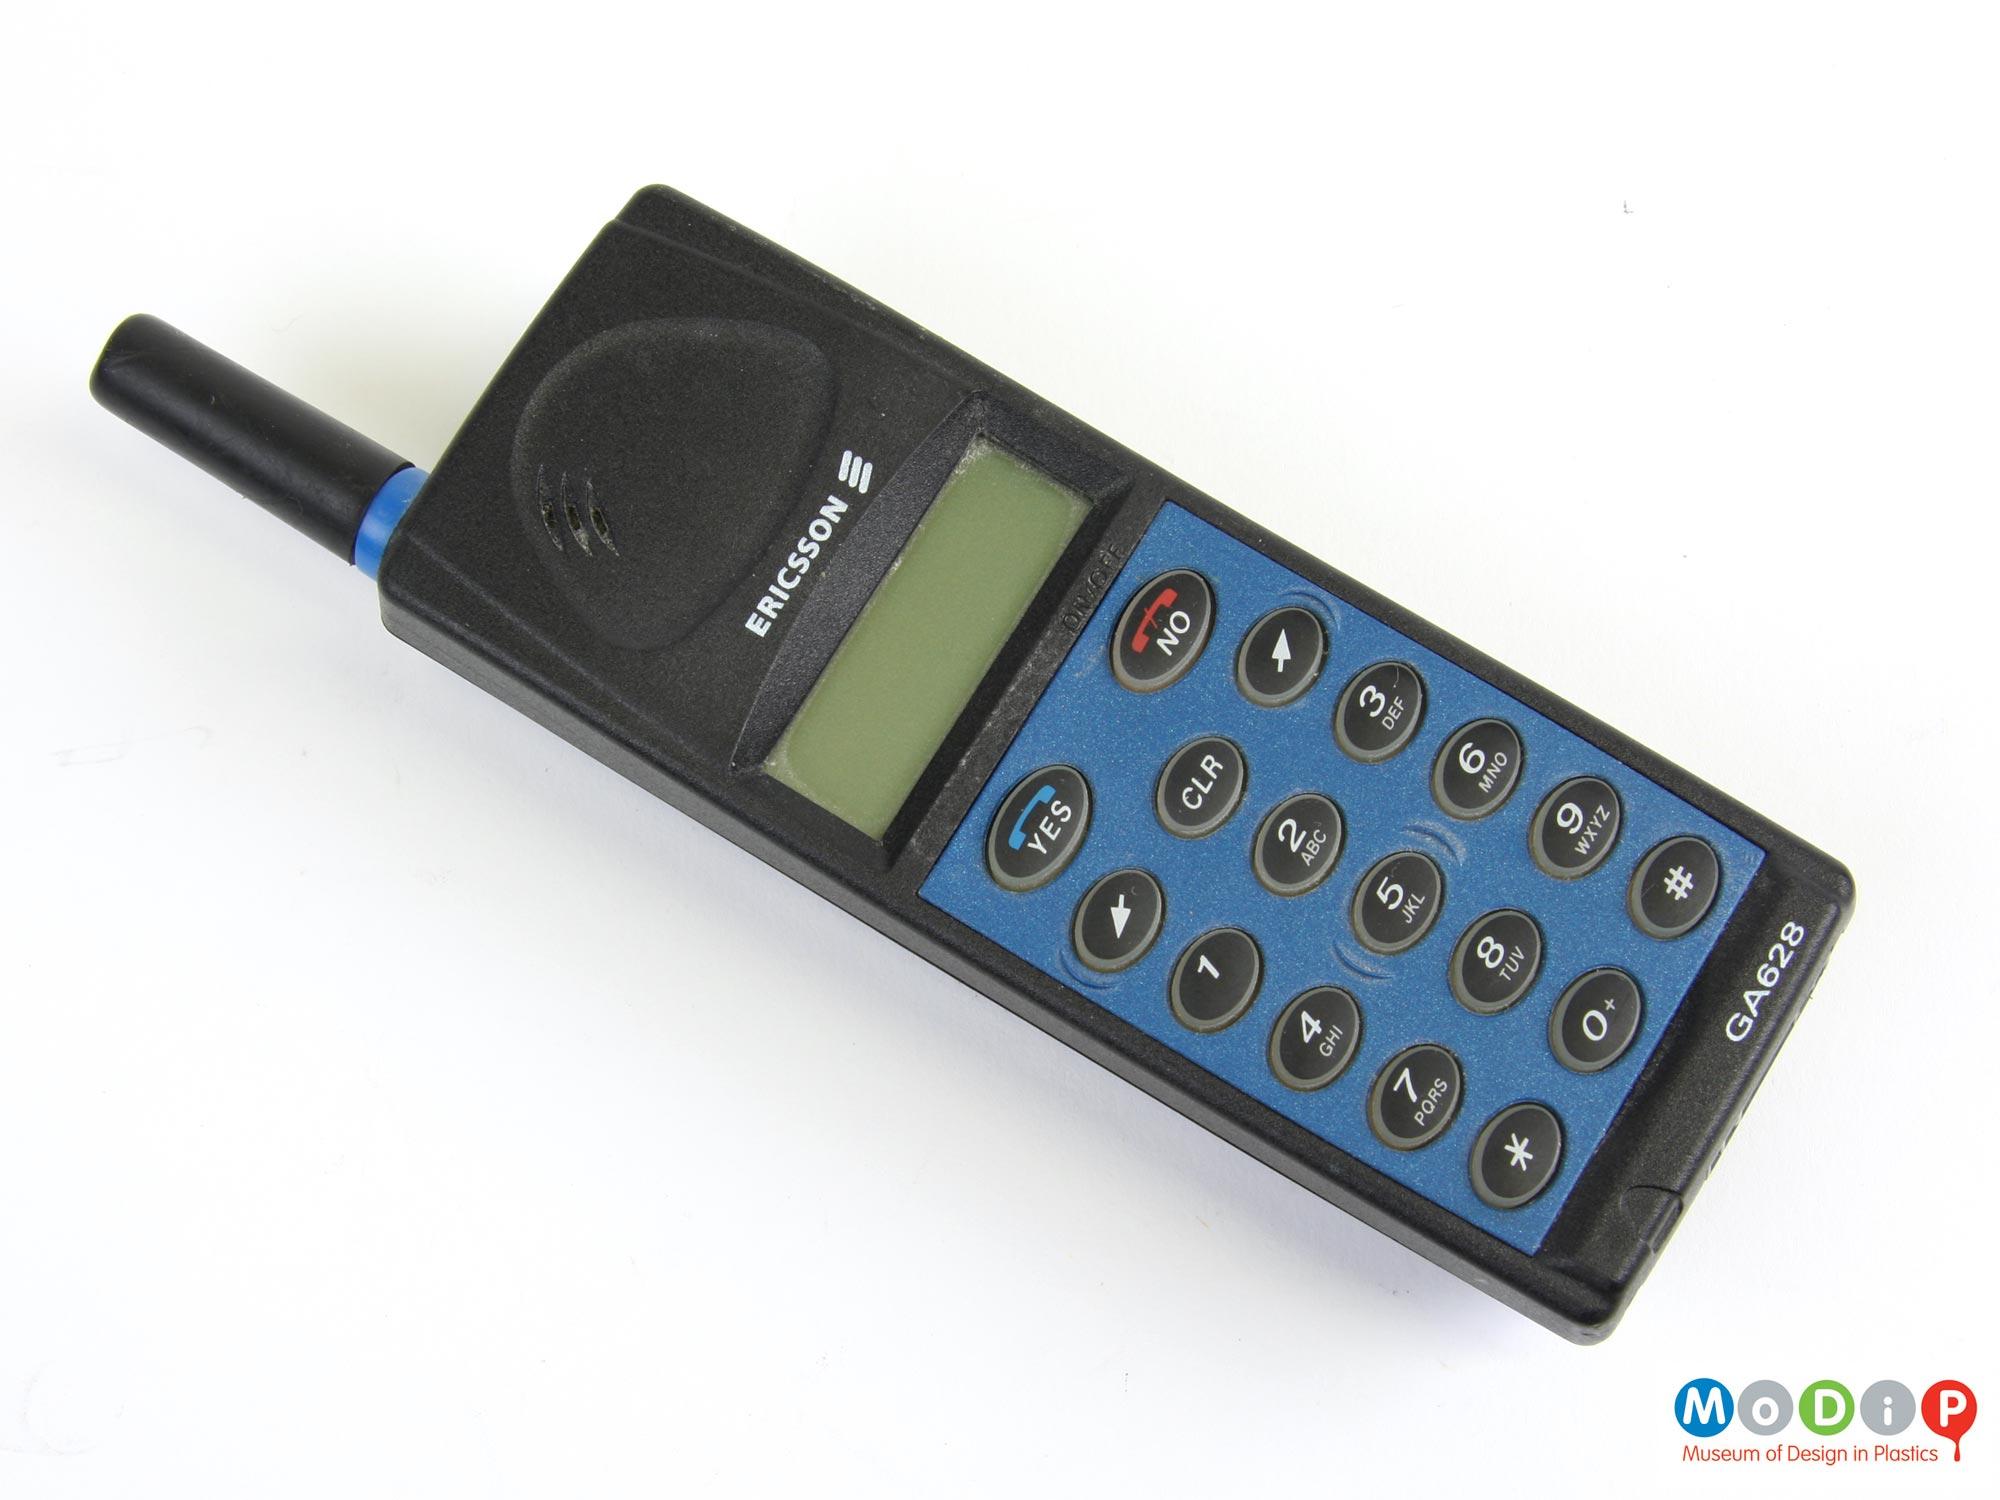 Ericsson GA628 mobile phone | Museum of Design in Plastics